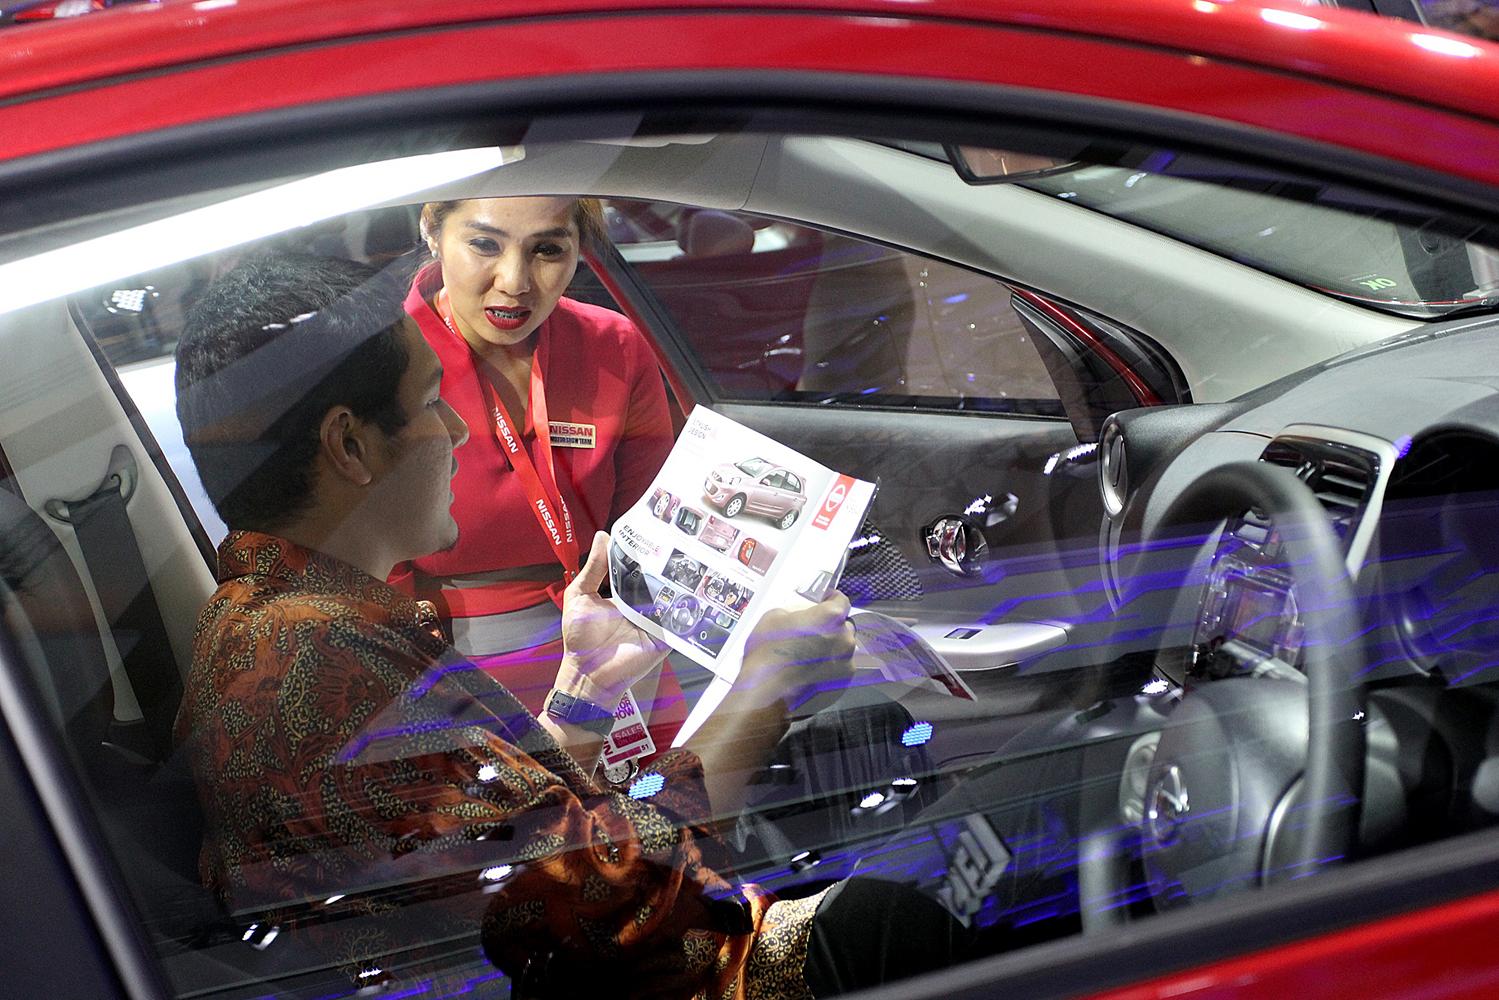 Pengunjung mencoba produk mobil pada arena pameran otomotif Indonesia International Motor Show (IIMS) 2016 saat pembukaan di Jakarta, Kamis (7/4). Pemeran otomotif yang akan berlangsung hingga 17 April 2016 itu diikuti pelaku industri otomotif di tanah air dengan menampilkan produk unggulan.